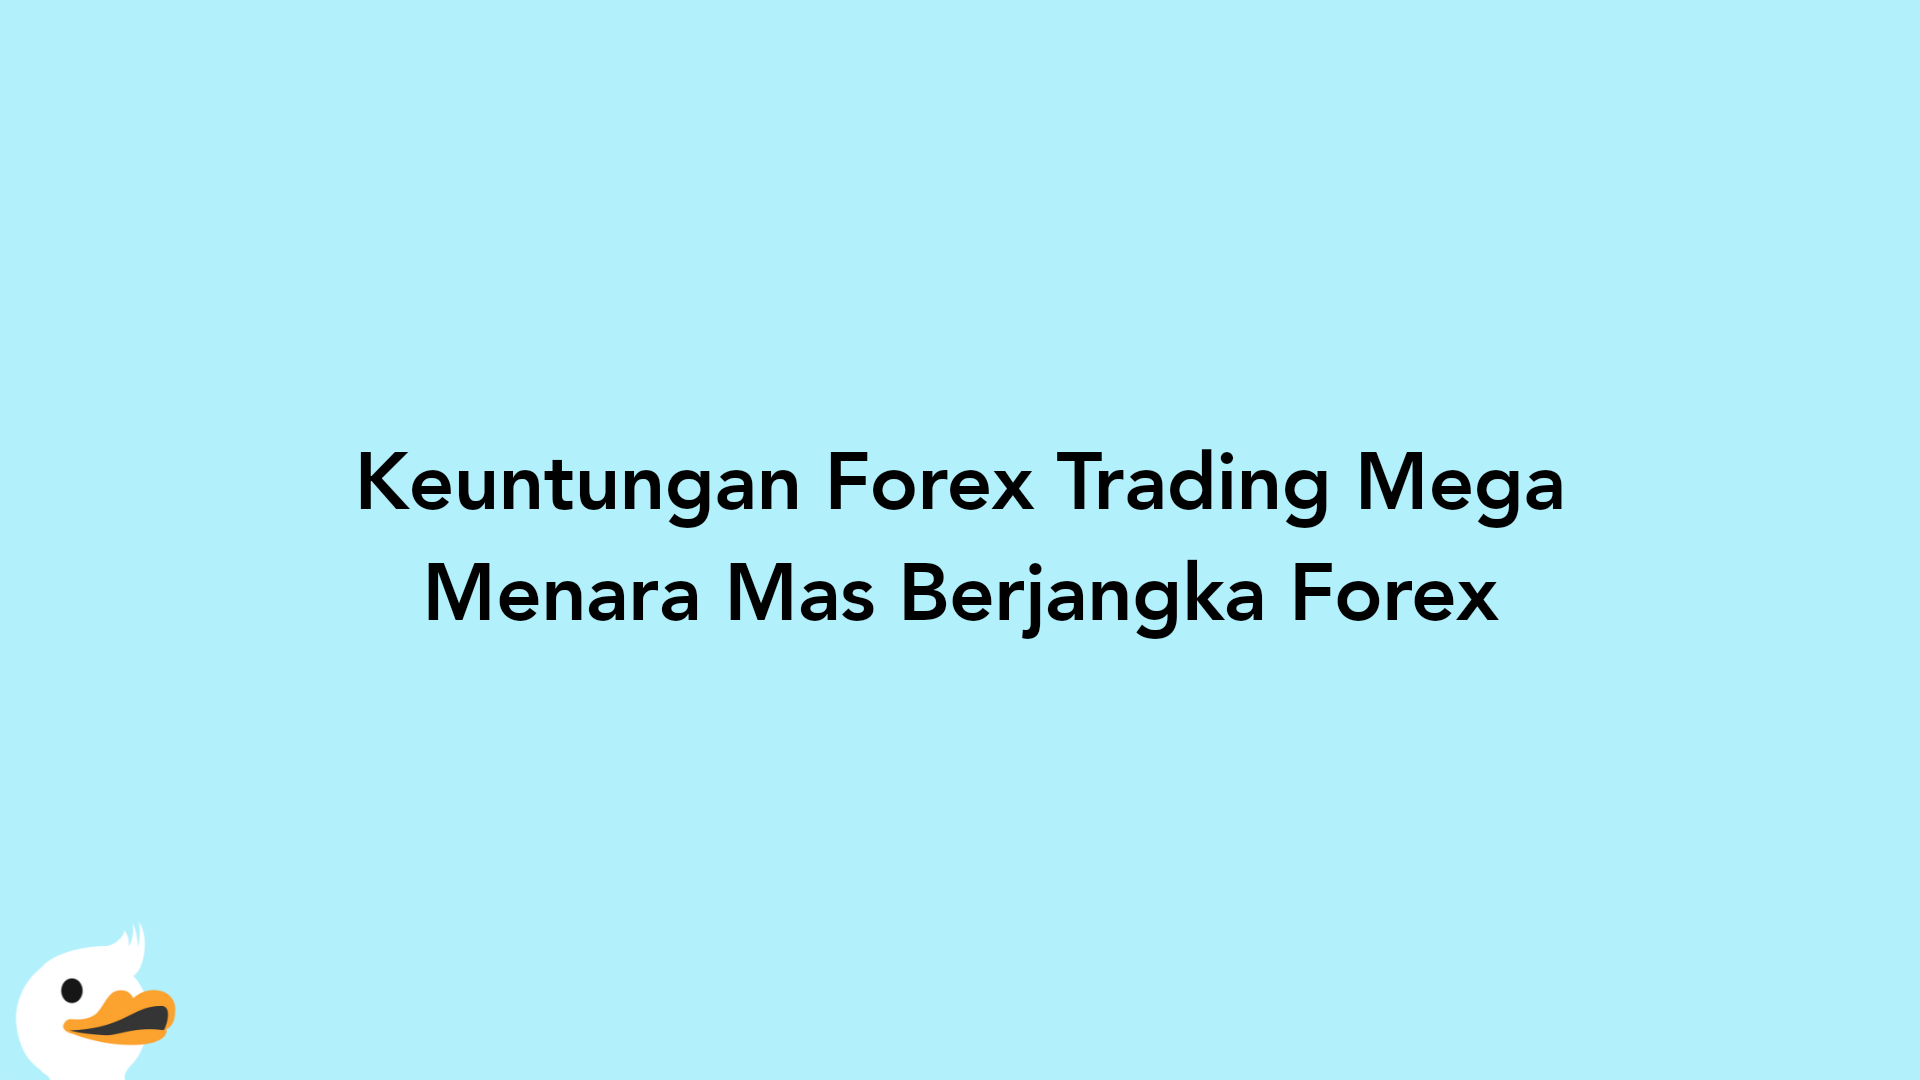 Keuntungan Forex Trading Mega Menara Mas Berjangka Forex